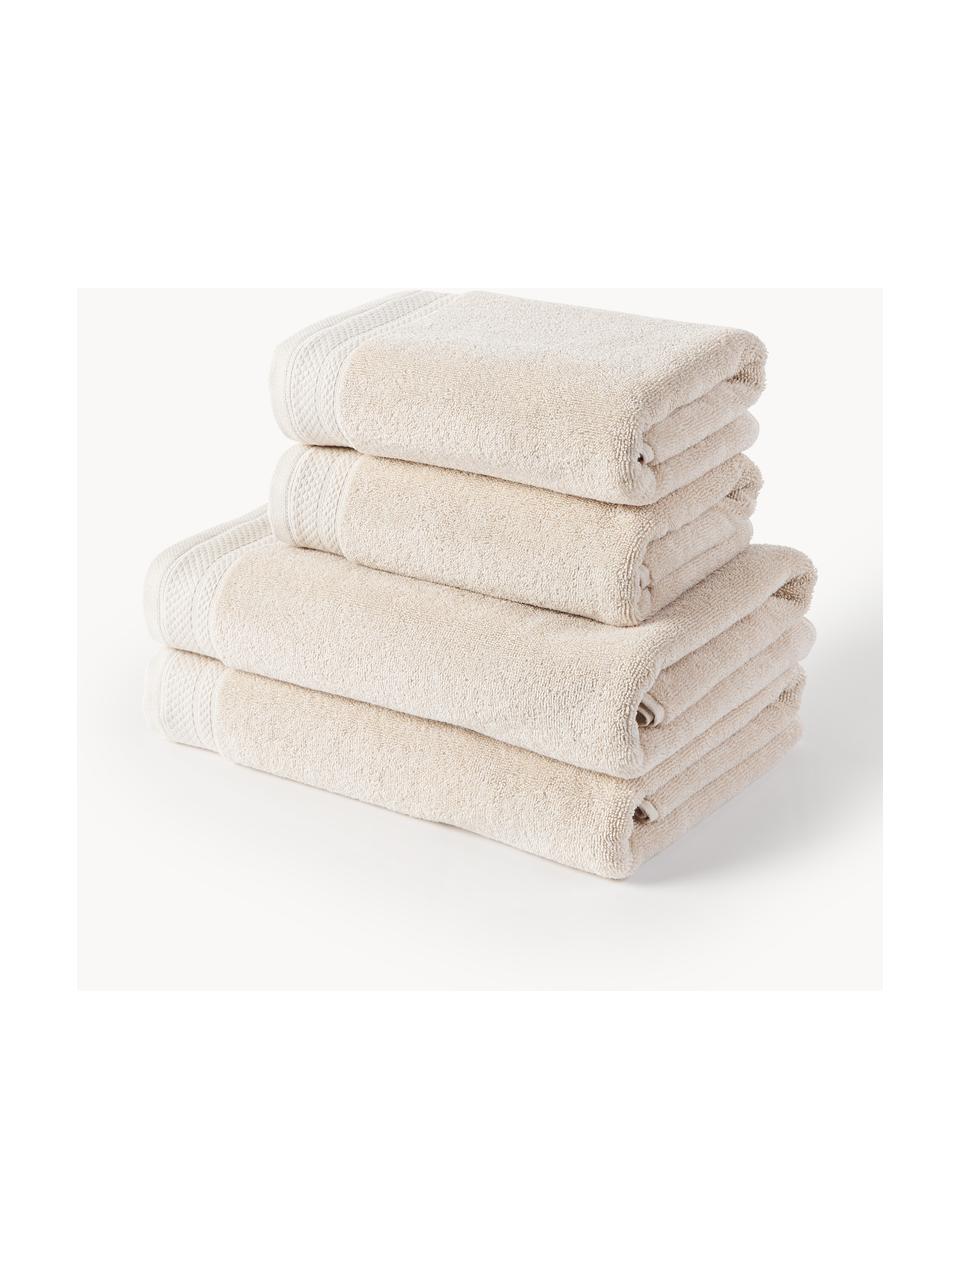 Súprava uterákov z organickej bavlny Premium, rôzne veľkosti, Svetlobéžová, 3-dielna súprava (uterák pre hostí, uterák na ruky, osuška)